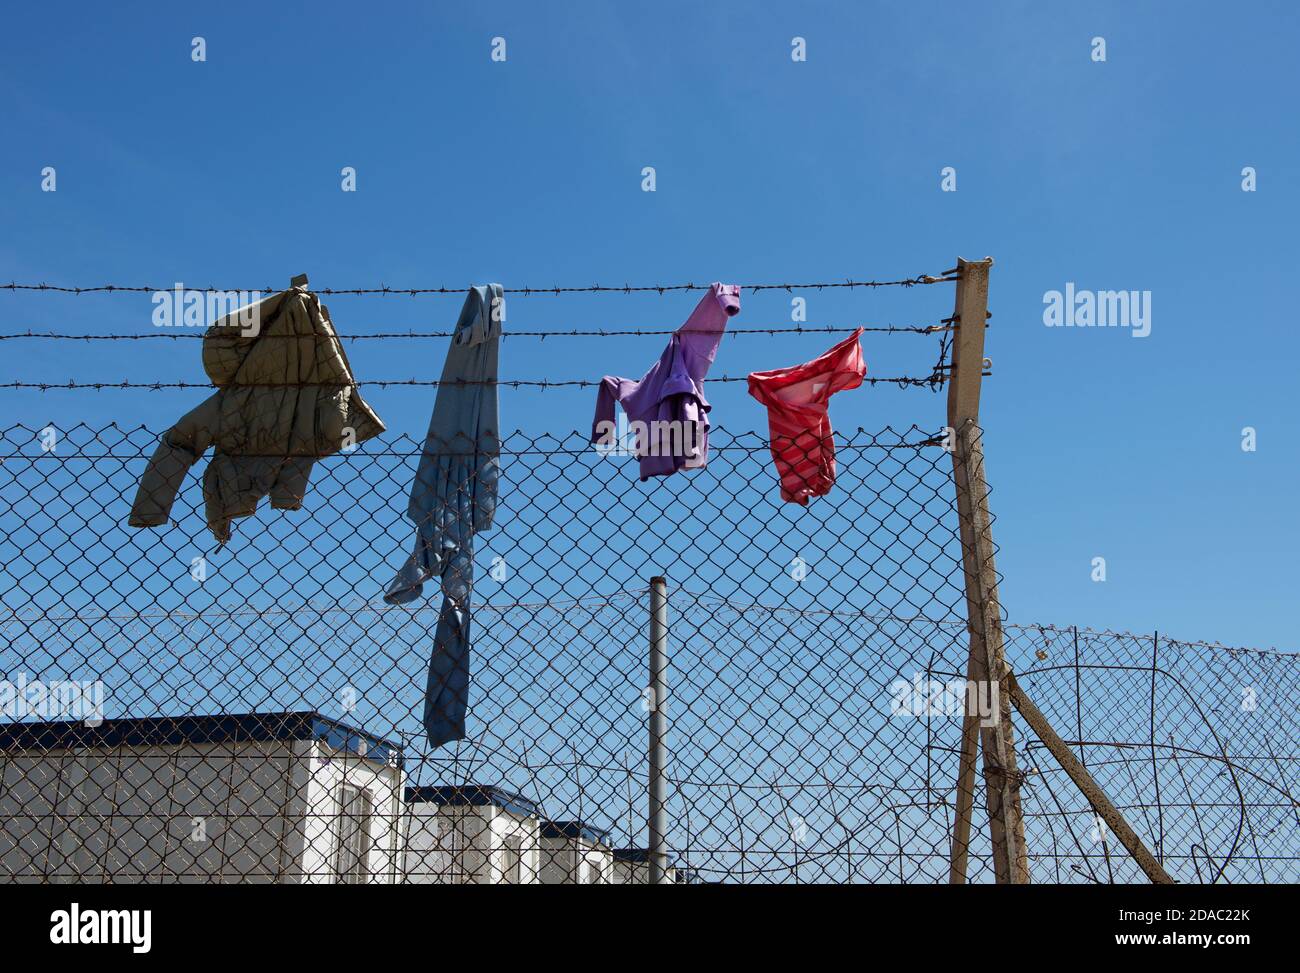 Centro de inmigrantes, lavandería en un cable. La cuestión social. La vida más allá de la valla. Centro de inmunidad en Malta Foto de stock